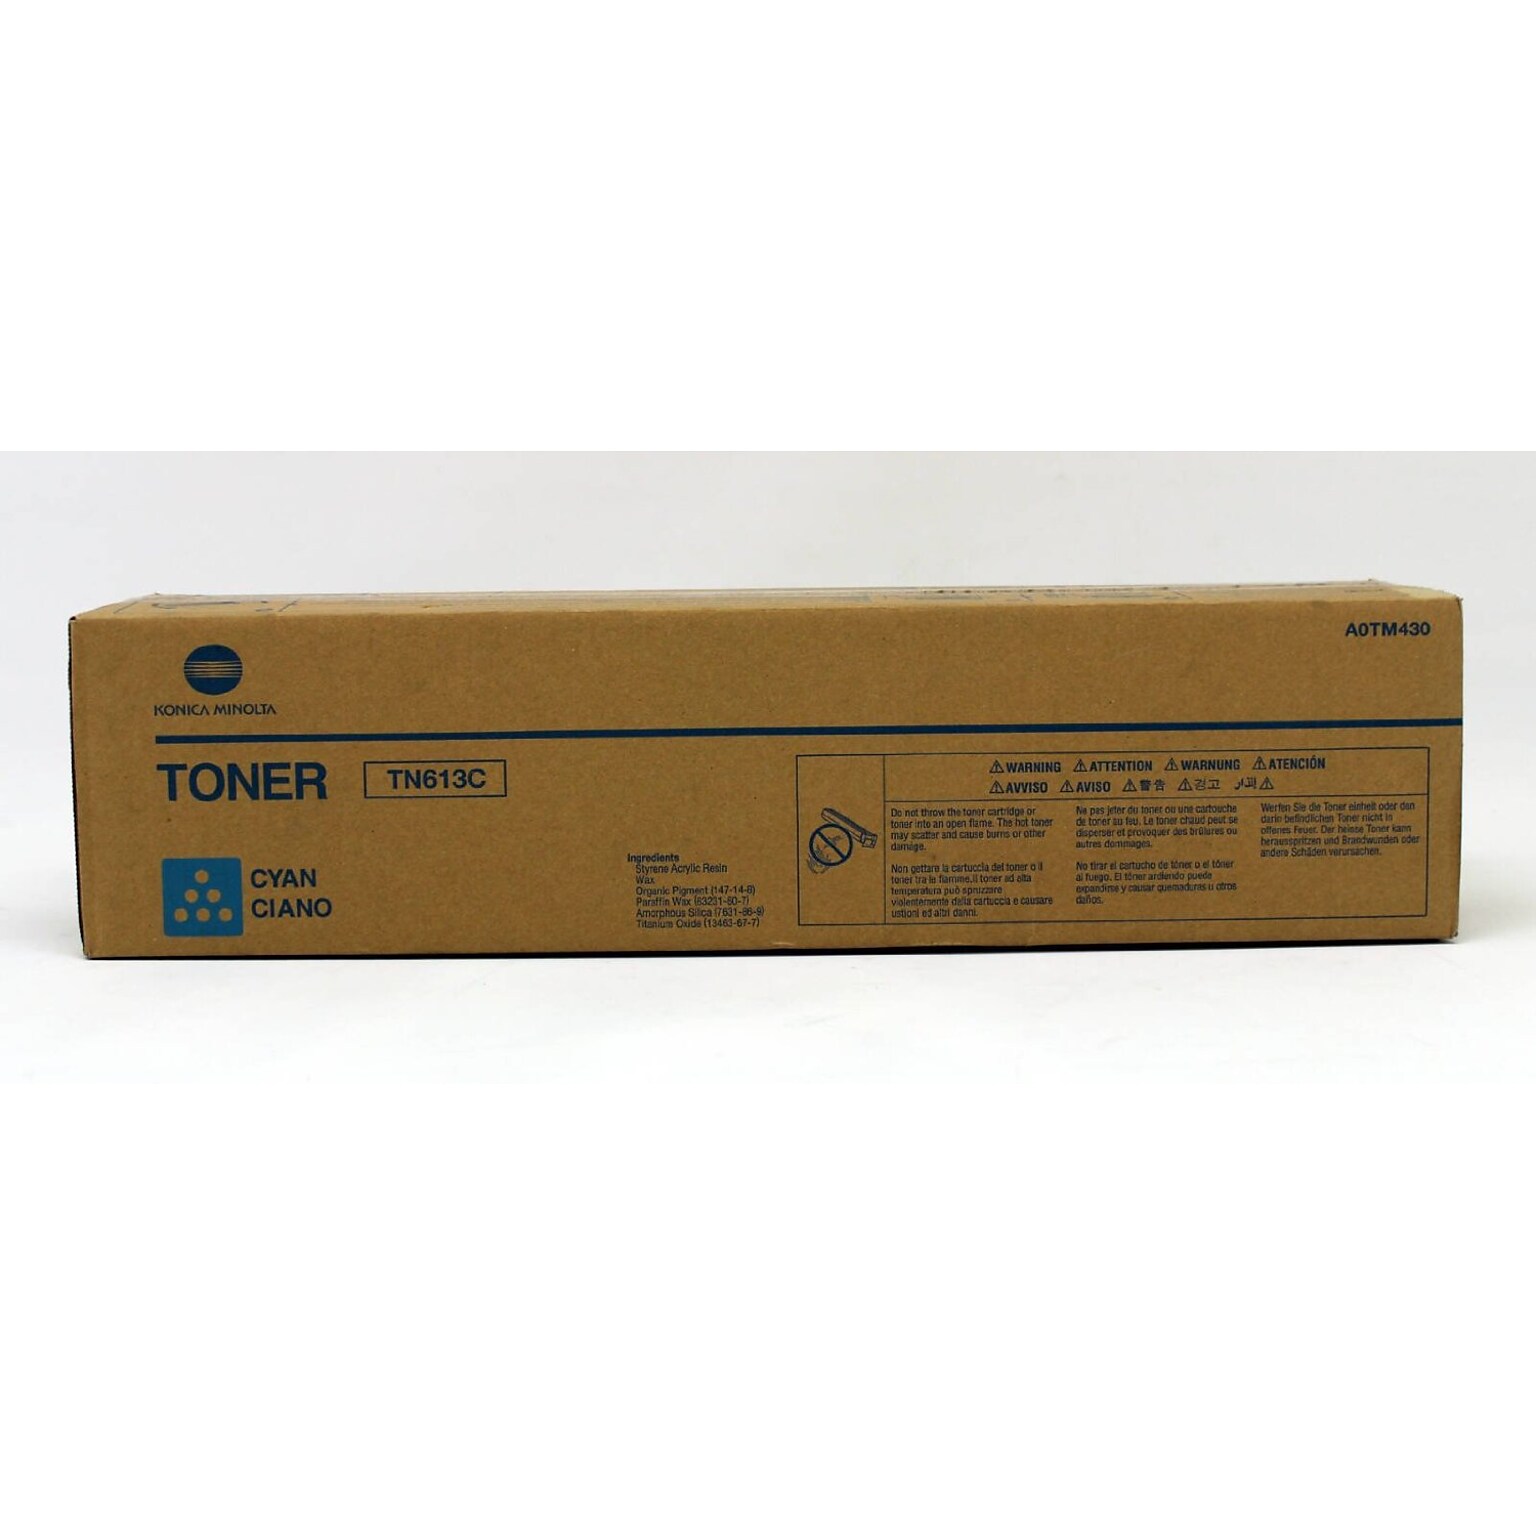 Konica Minolta TN-613 Cyan Standard Yield Toner Cartridge (A0TM430)